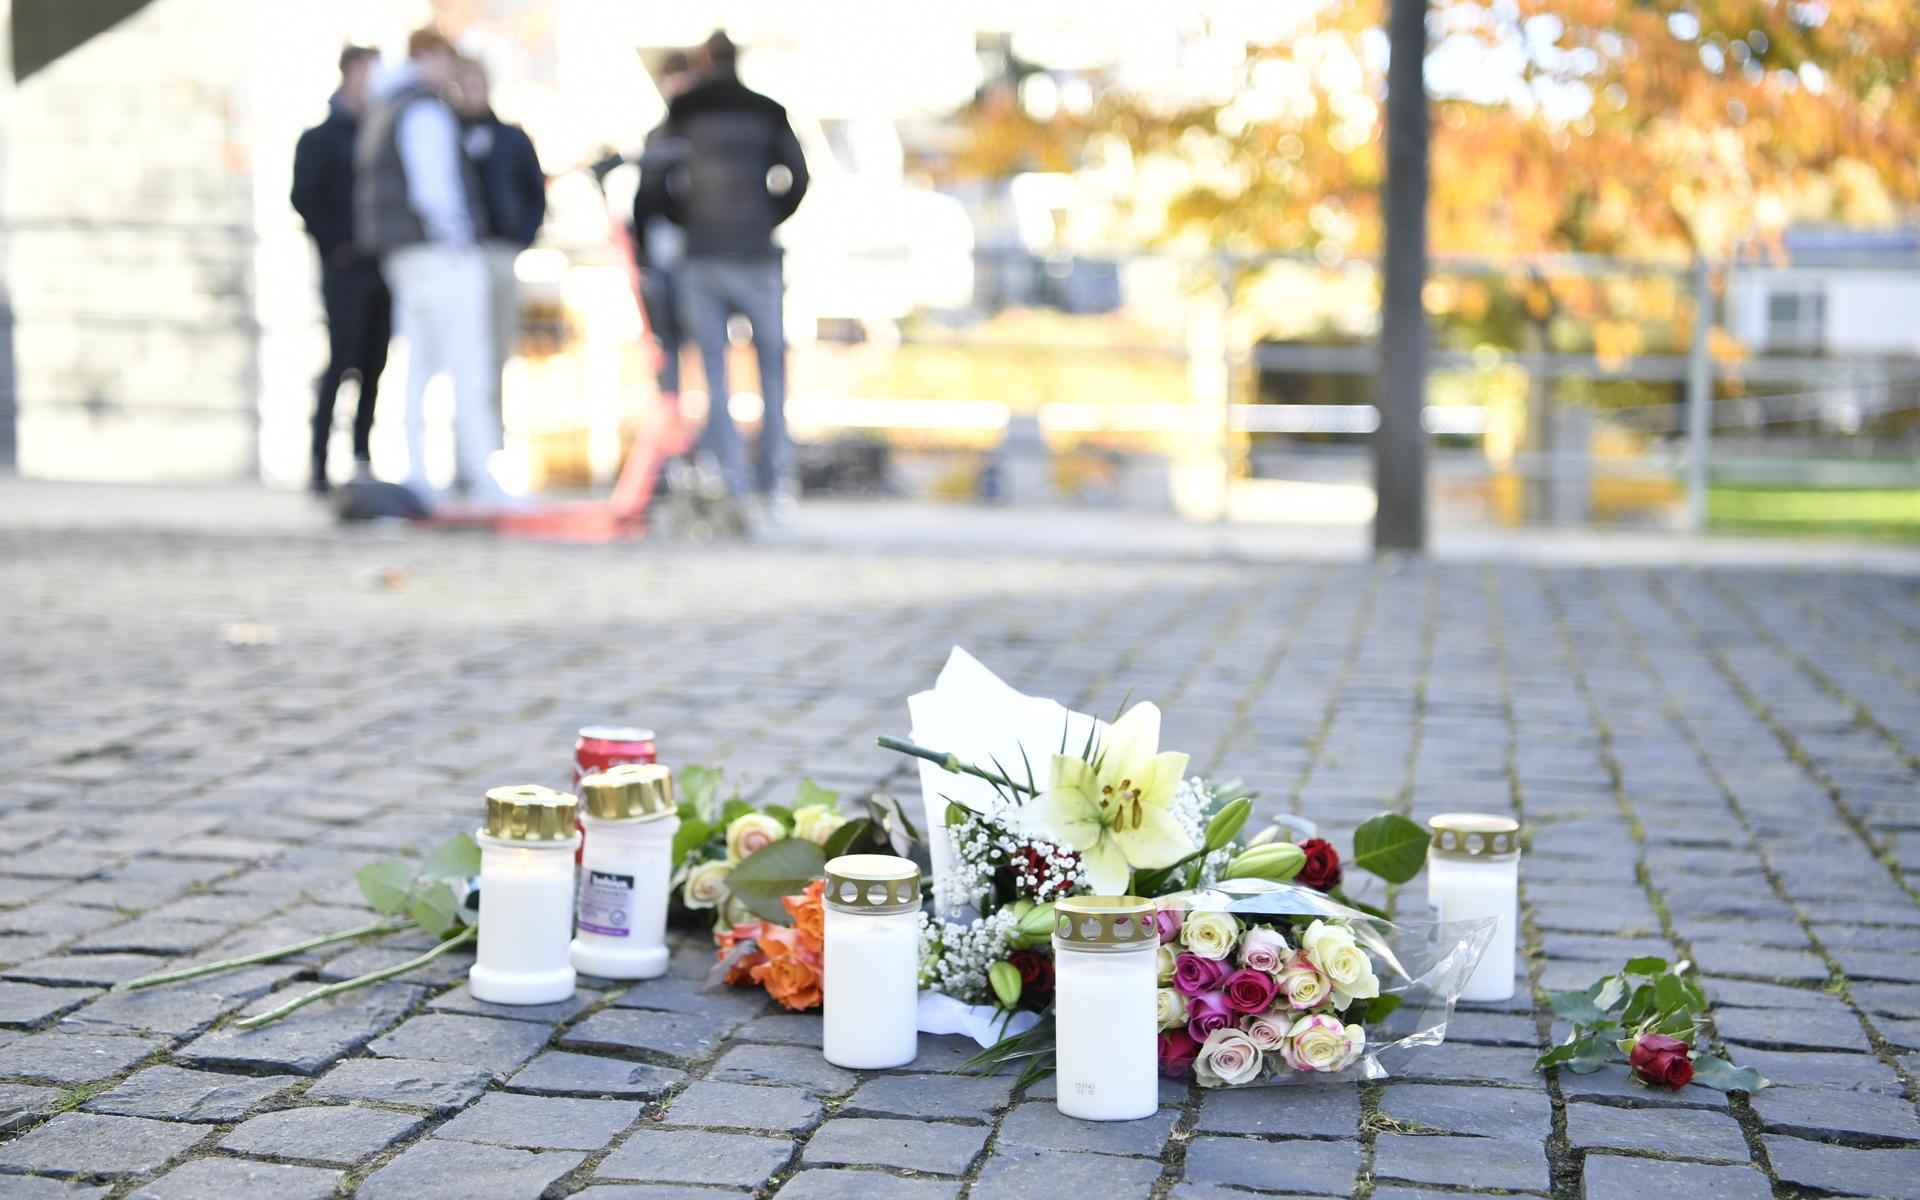 På fredagen har flera människor samlats och tänt ljus och lämnat blommor i sorg för den dödade rapstjärnan.